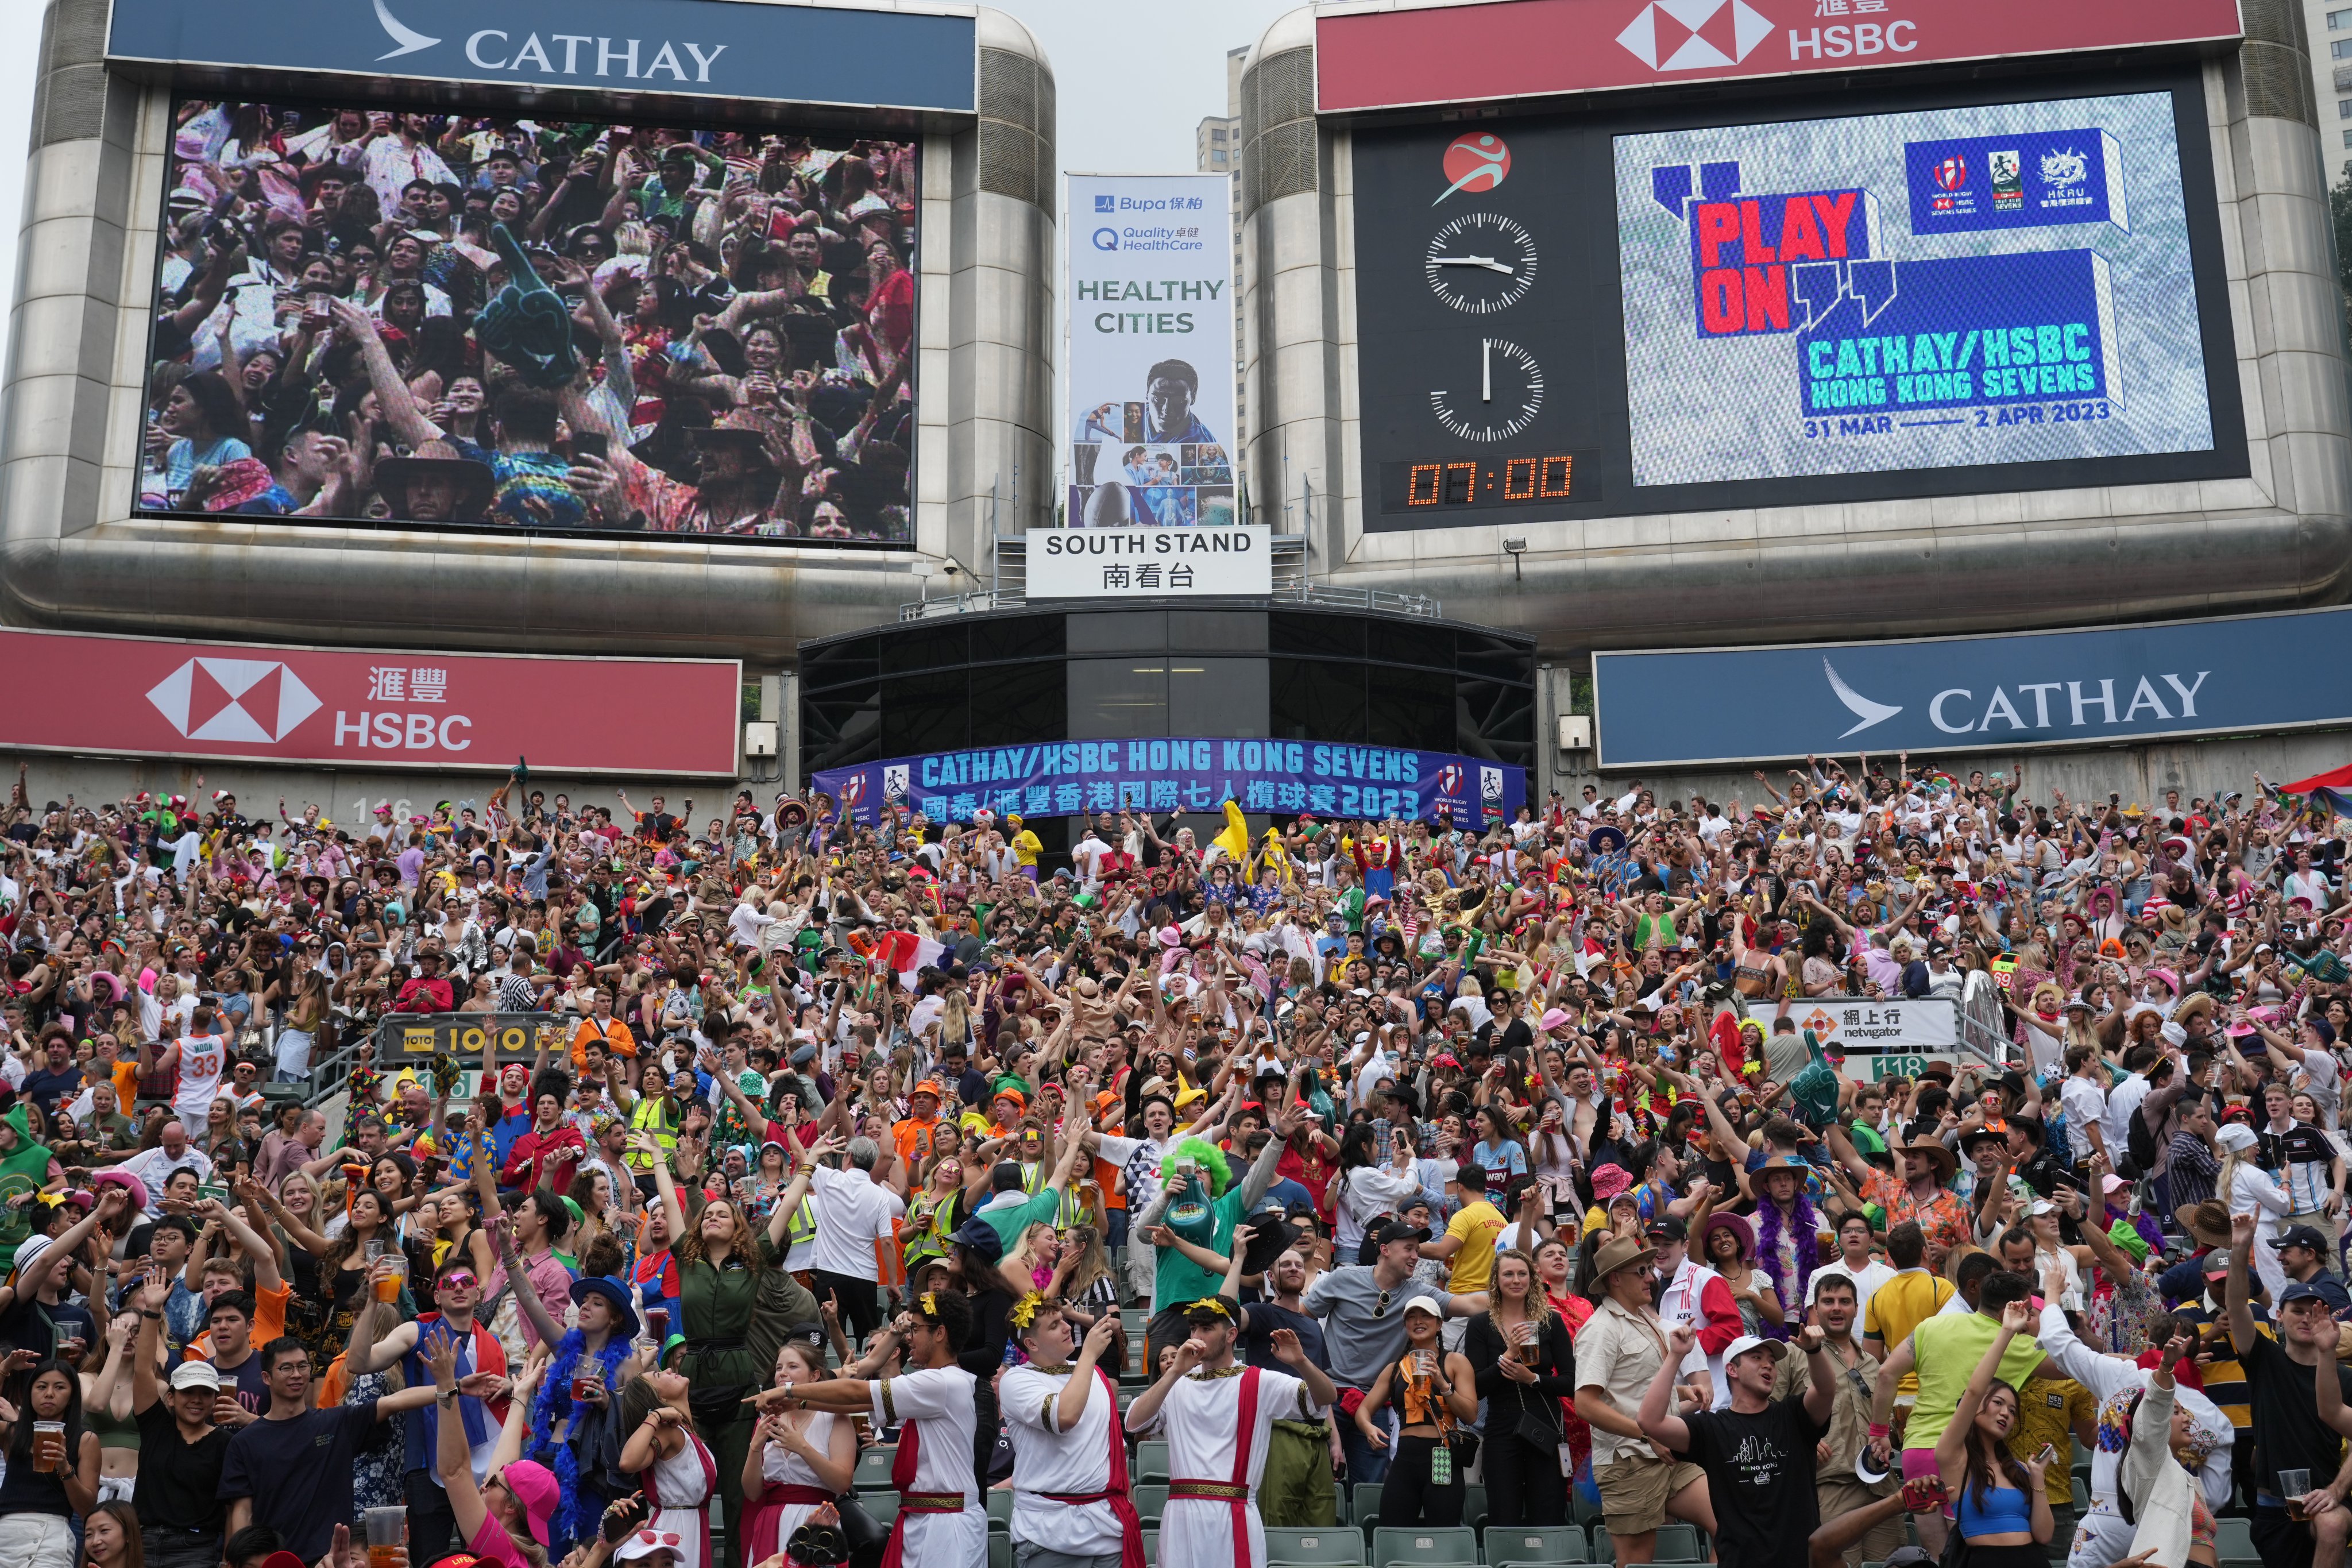 Fans at the Cathay/HSBC Hong Kong Sevens at Hong Kong Stadium on April 1, 2023. Photo: Sam Tsang